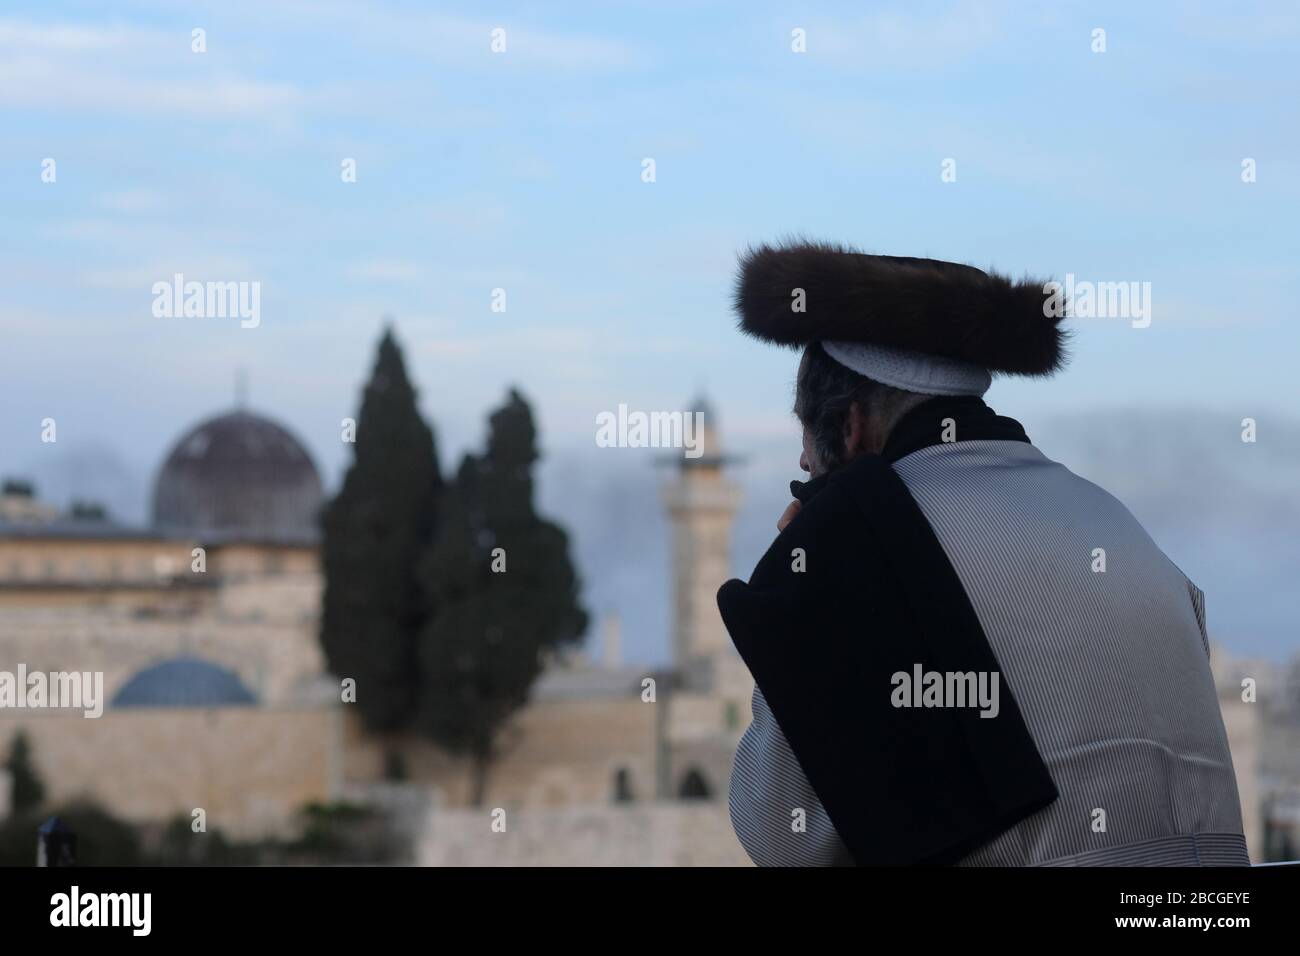 Un ebreo asidico che indossa uno shtreimel un cappello di pelliccia indossato da molti uomini ebrei Haredi sposati guarda alla moschea di al Aqsa un santuario islamico situato sul monte del Tempio noto ai musulmani come l'Haram esh-Sharif nella Città Vecchia Gerusalemme Est Israele Foto Stock